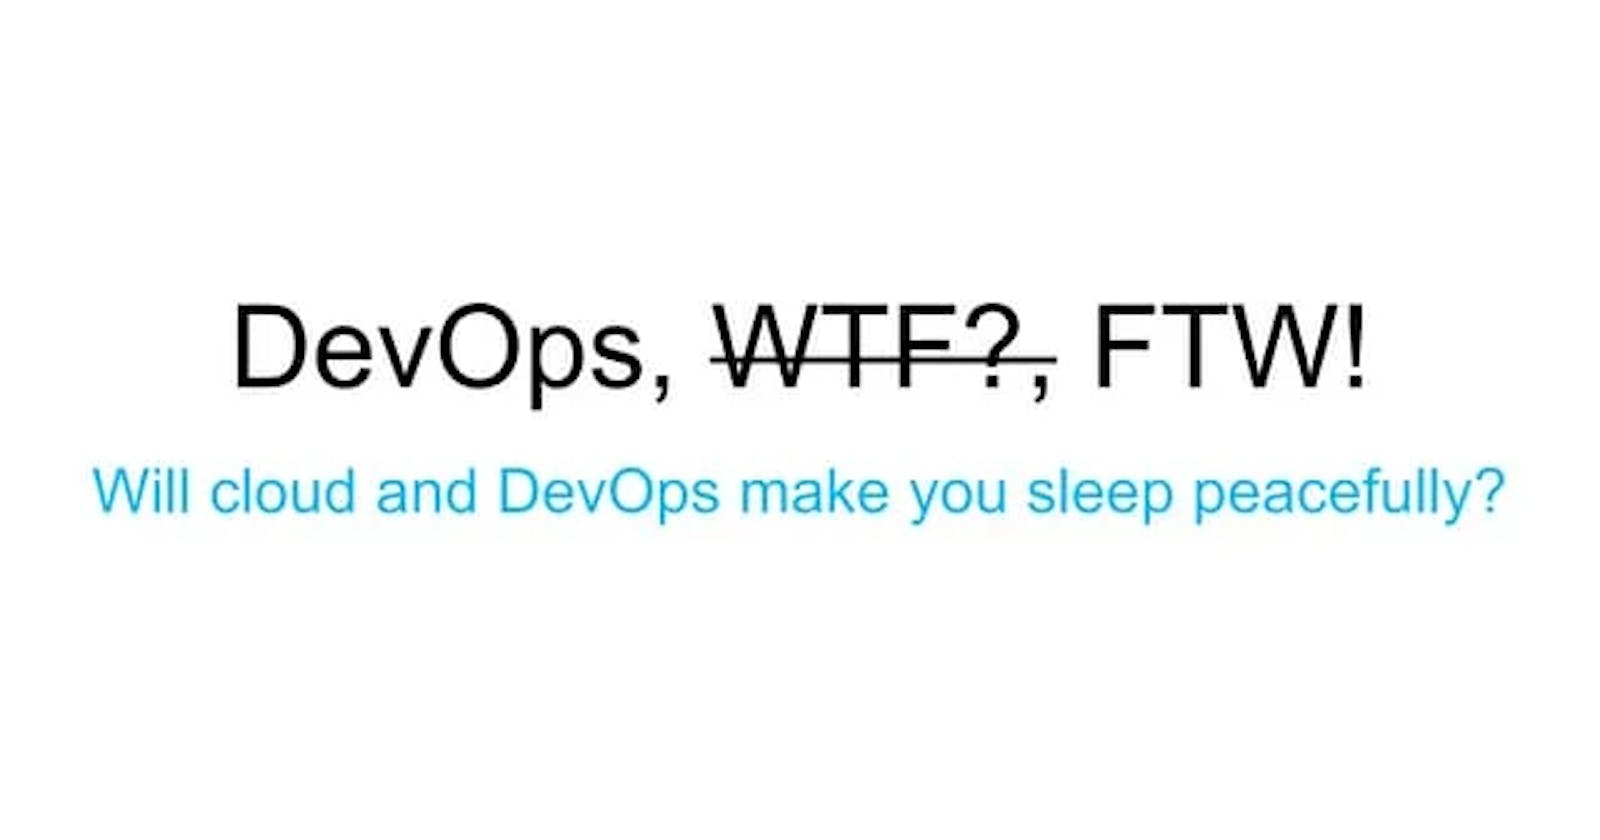 WTF is DevOps?